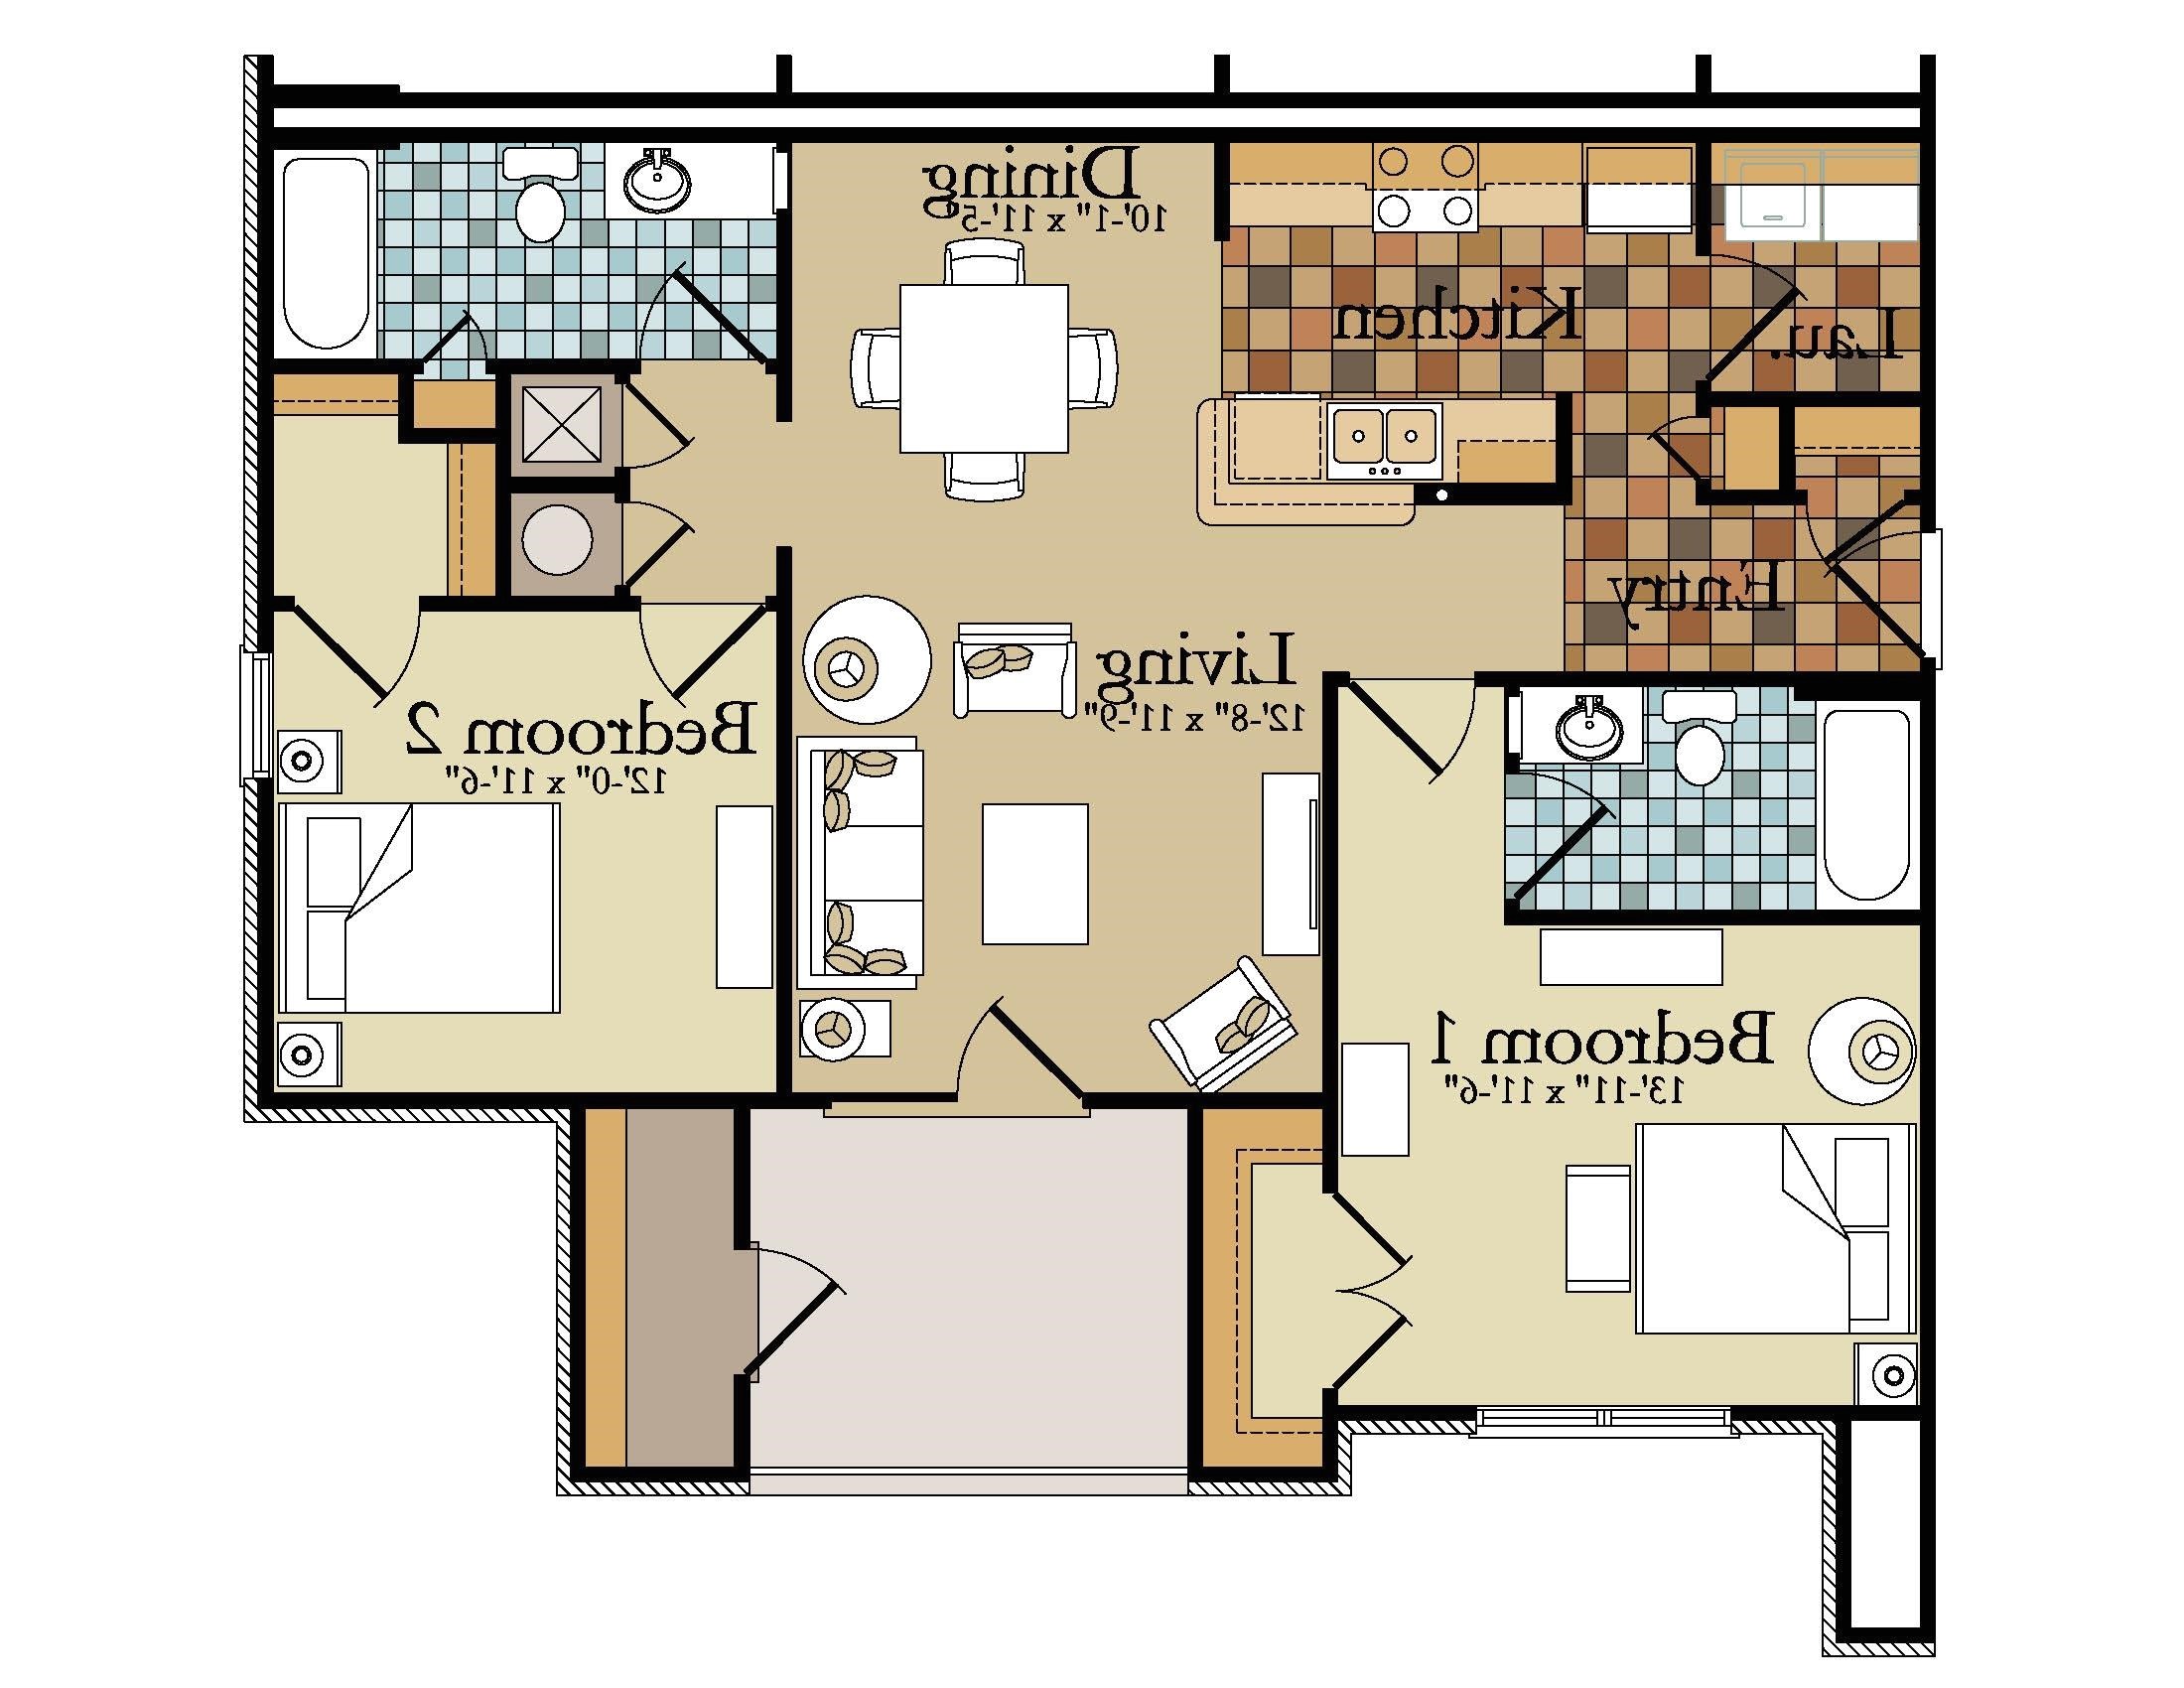 3 bedroom garage apartment floor plans